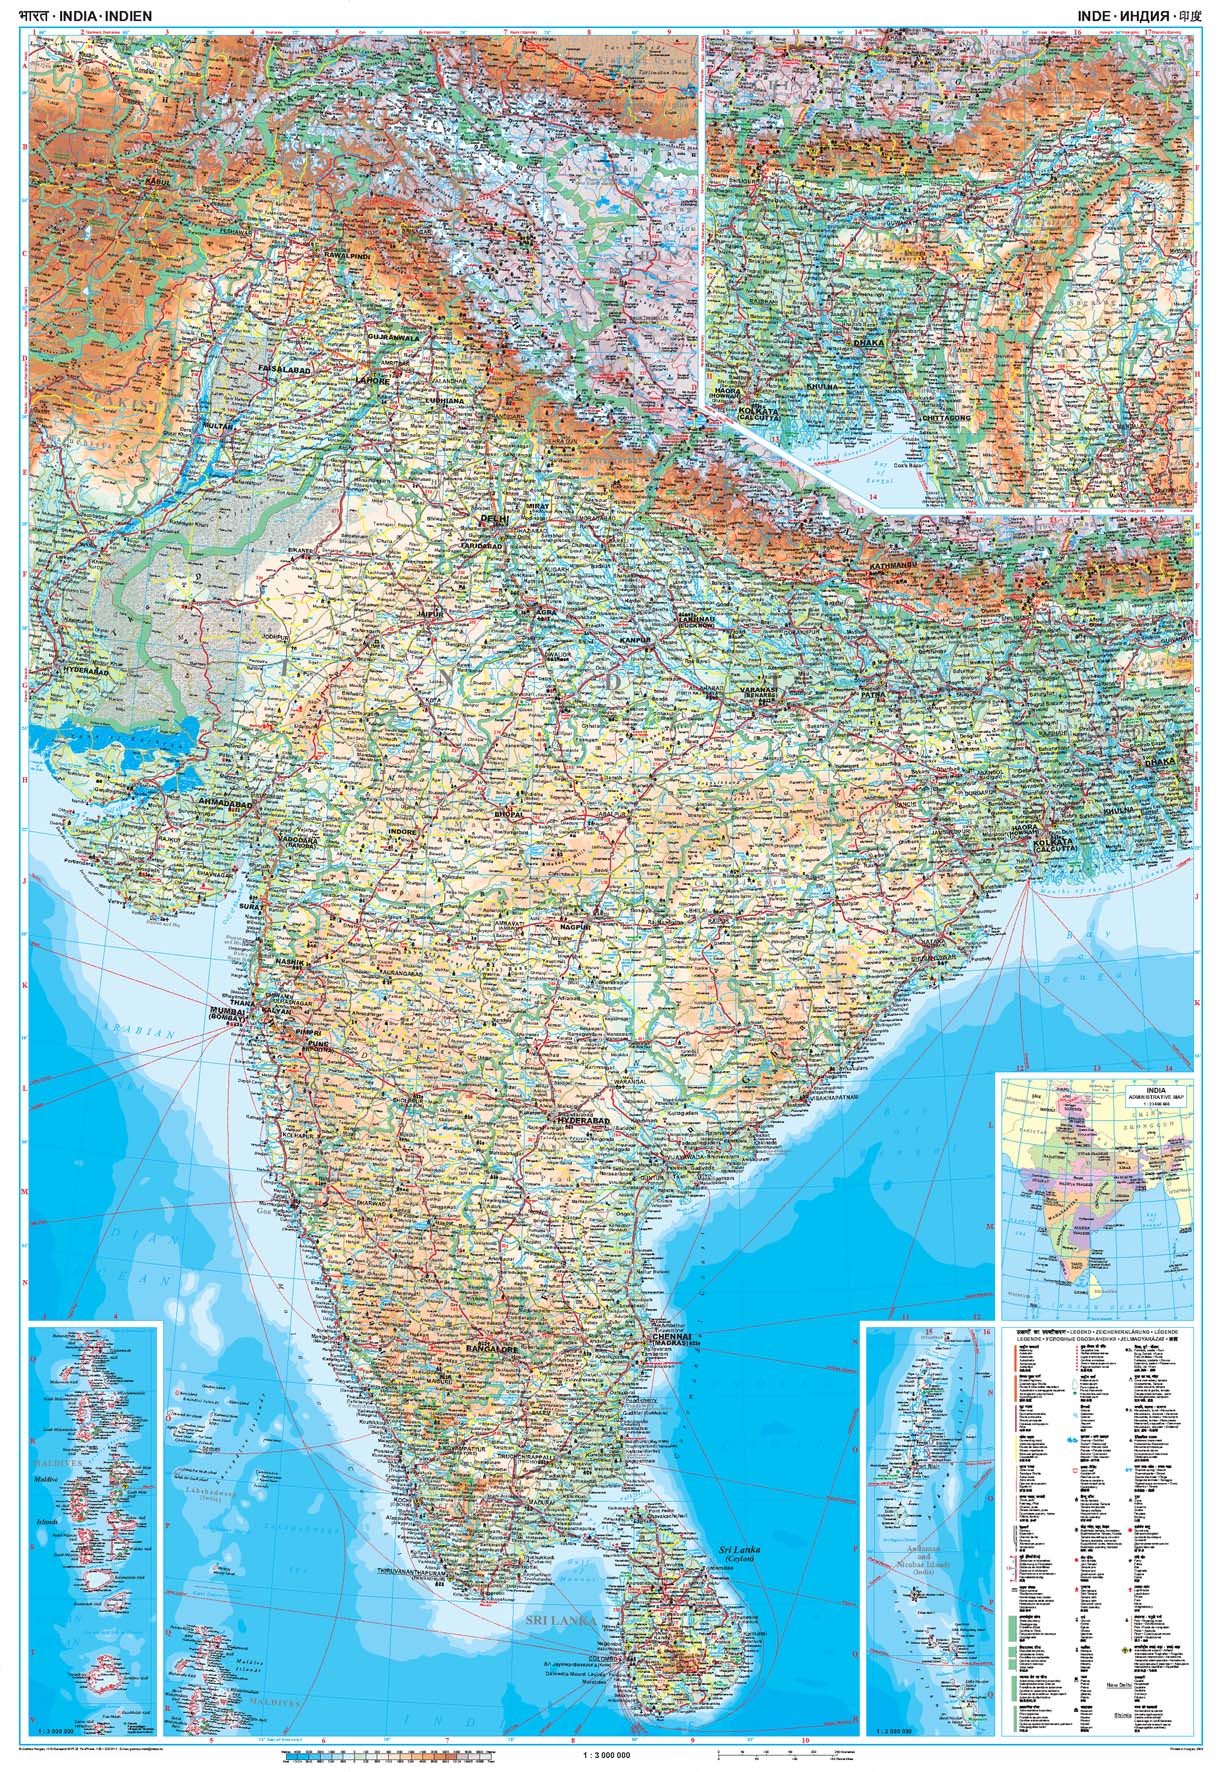 Indien Landkarten - Blog Neuigkeiten